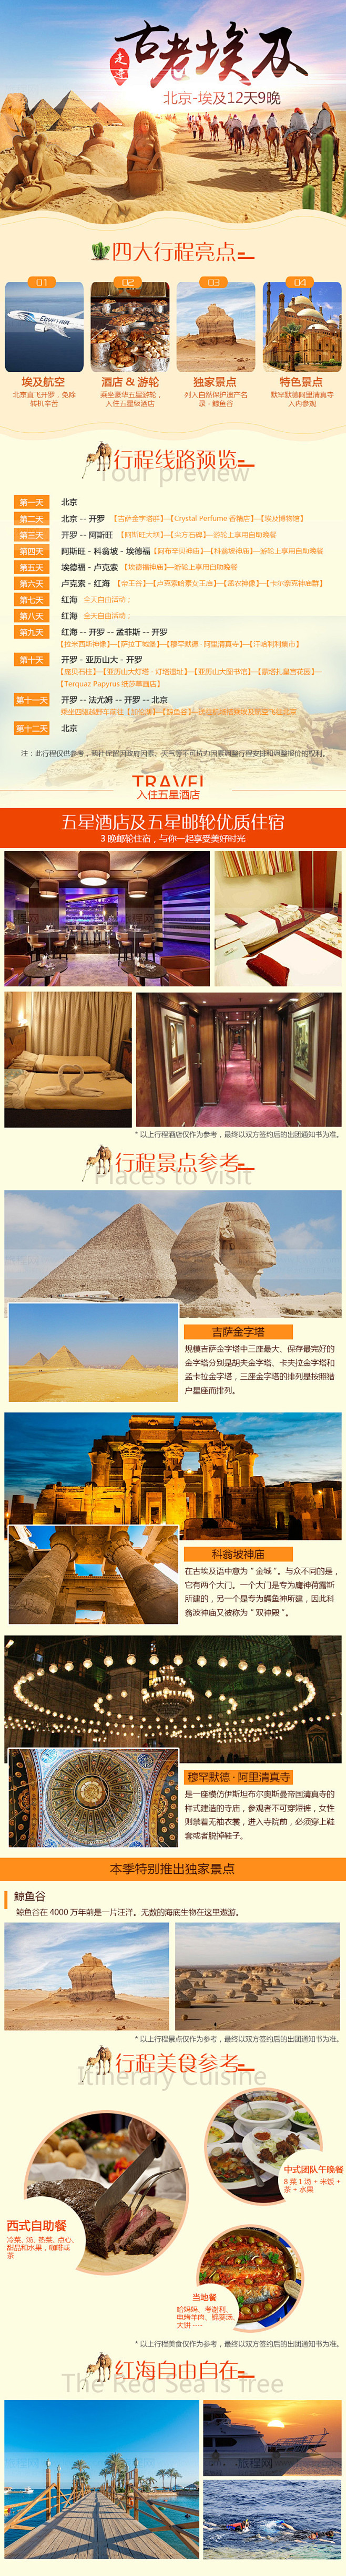 古老埃及旅行旅游详情图